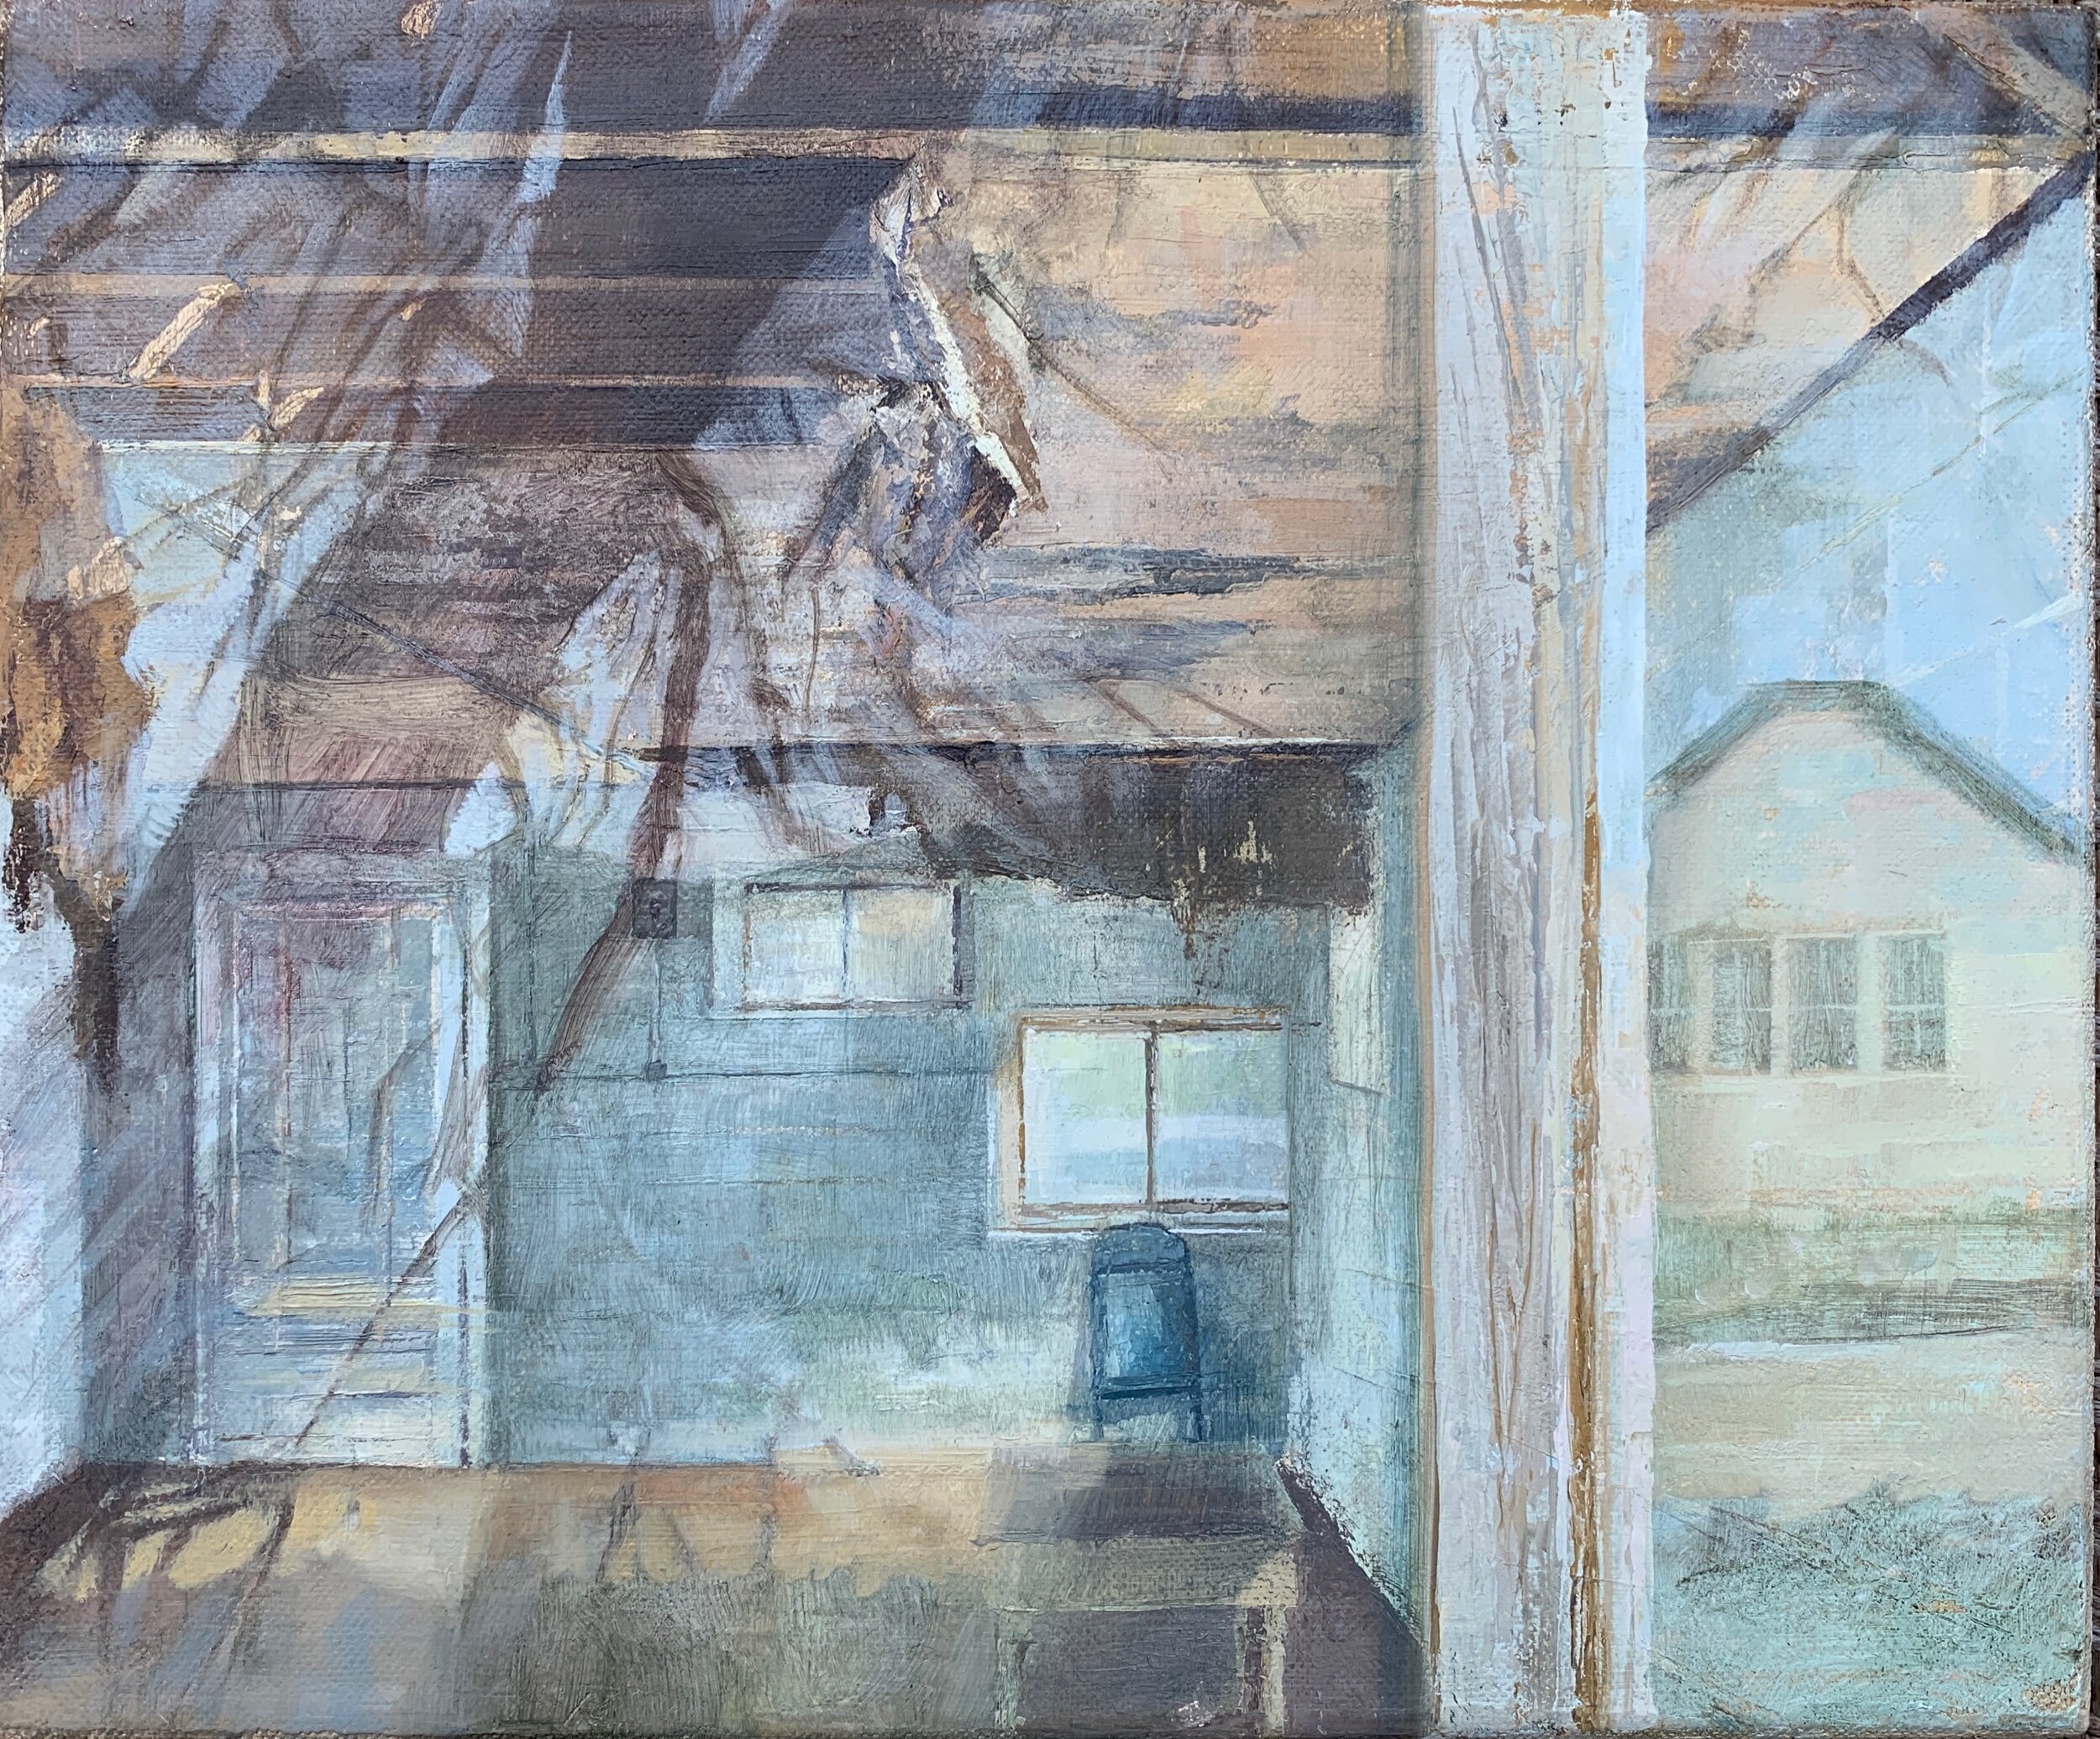   Ulm, Wyoming: Schoolhouse Window,  2014 oil on linen, 10 x 14 in 